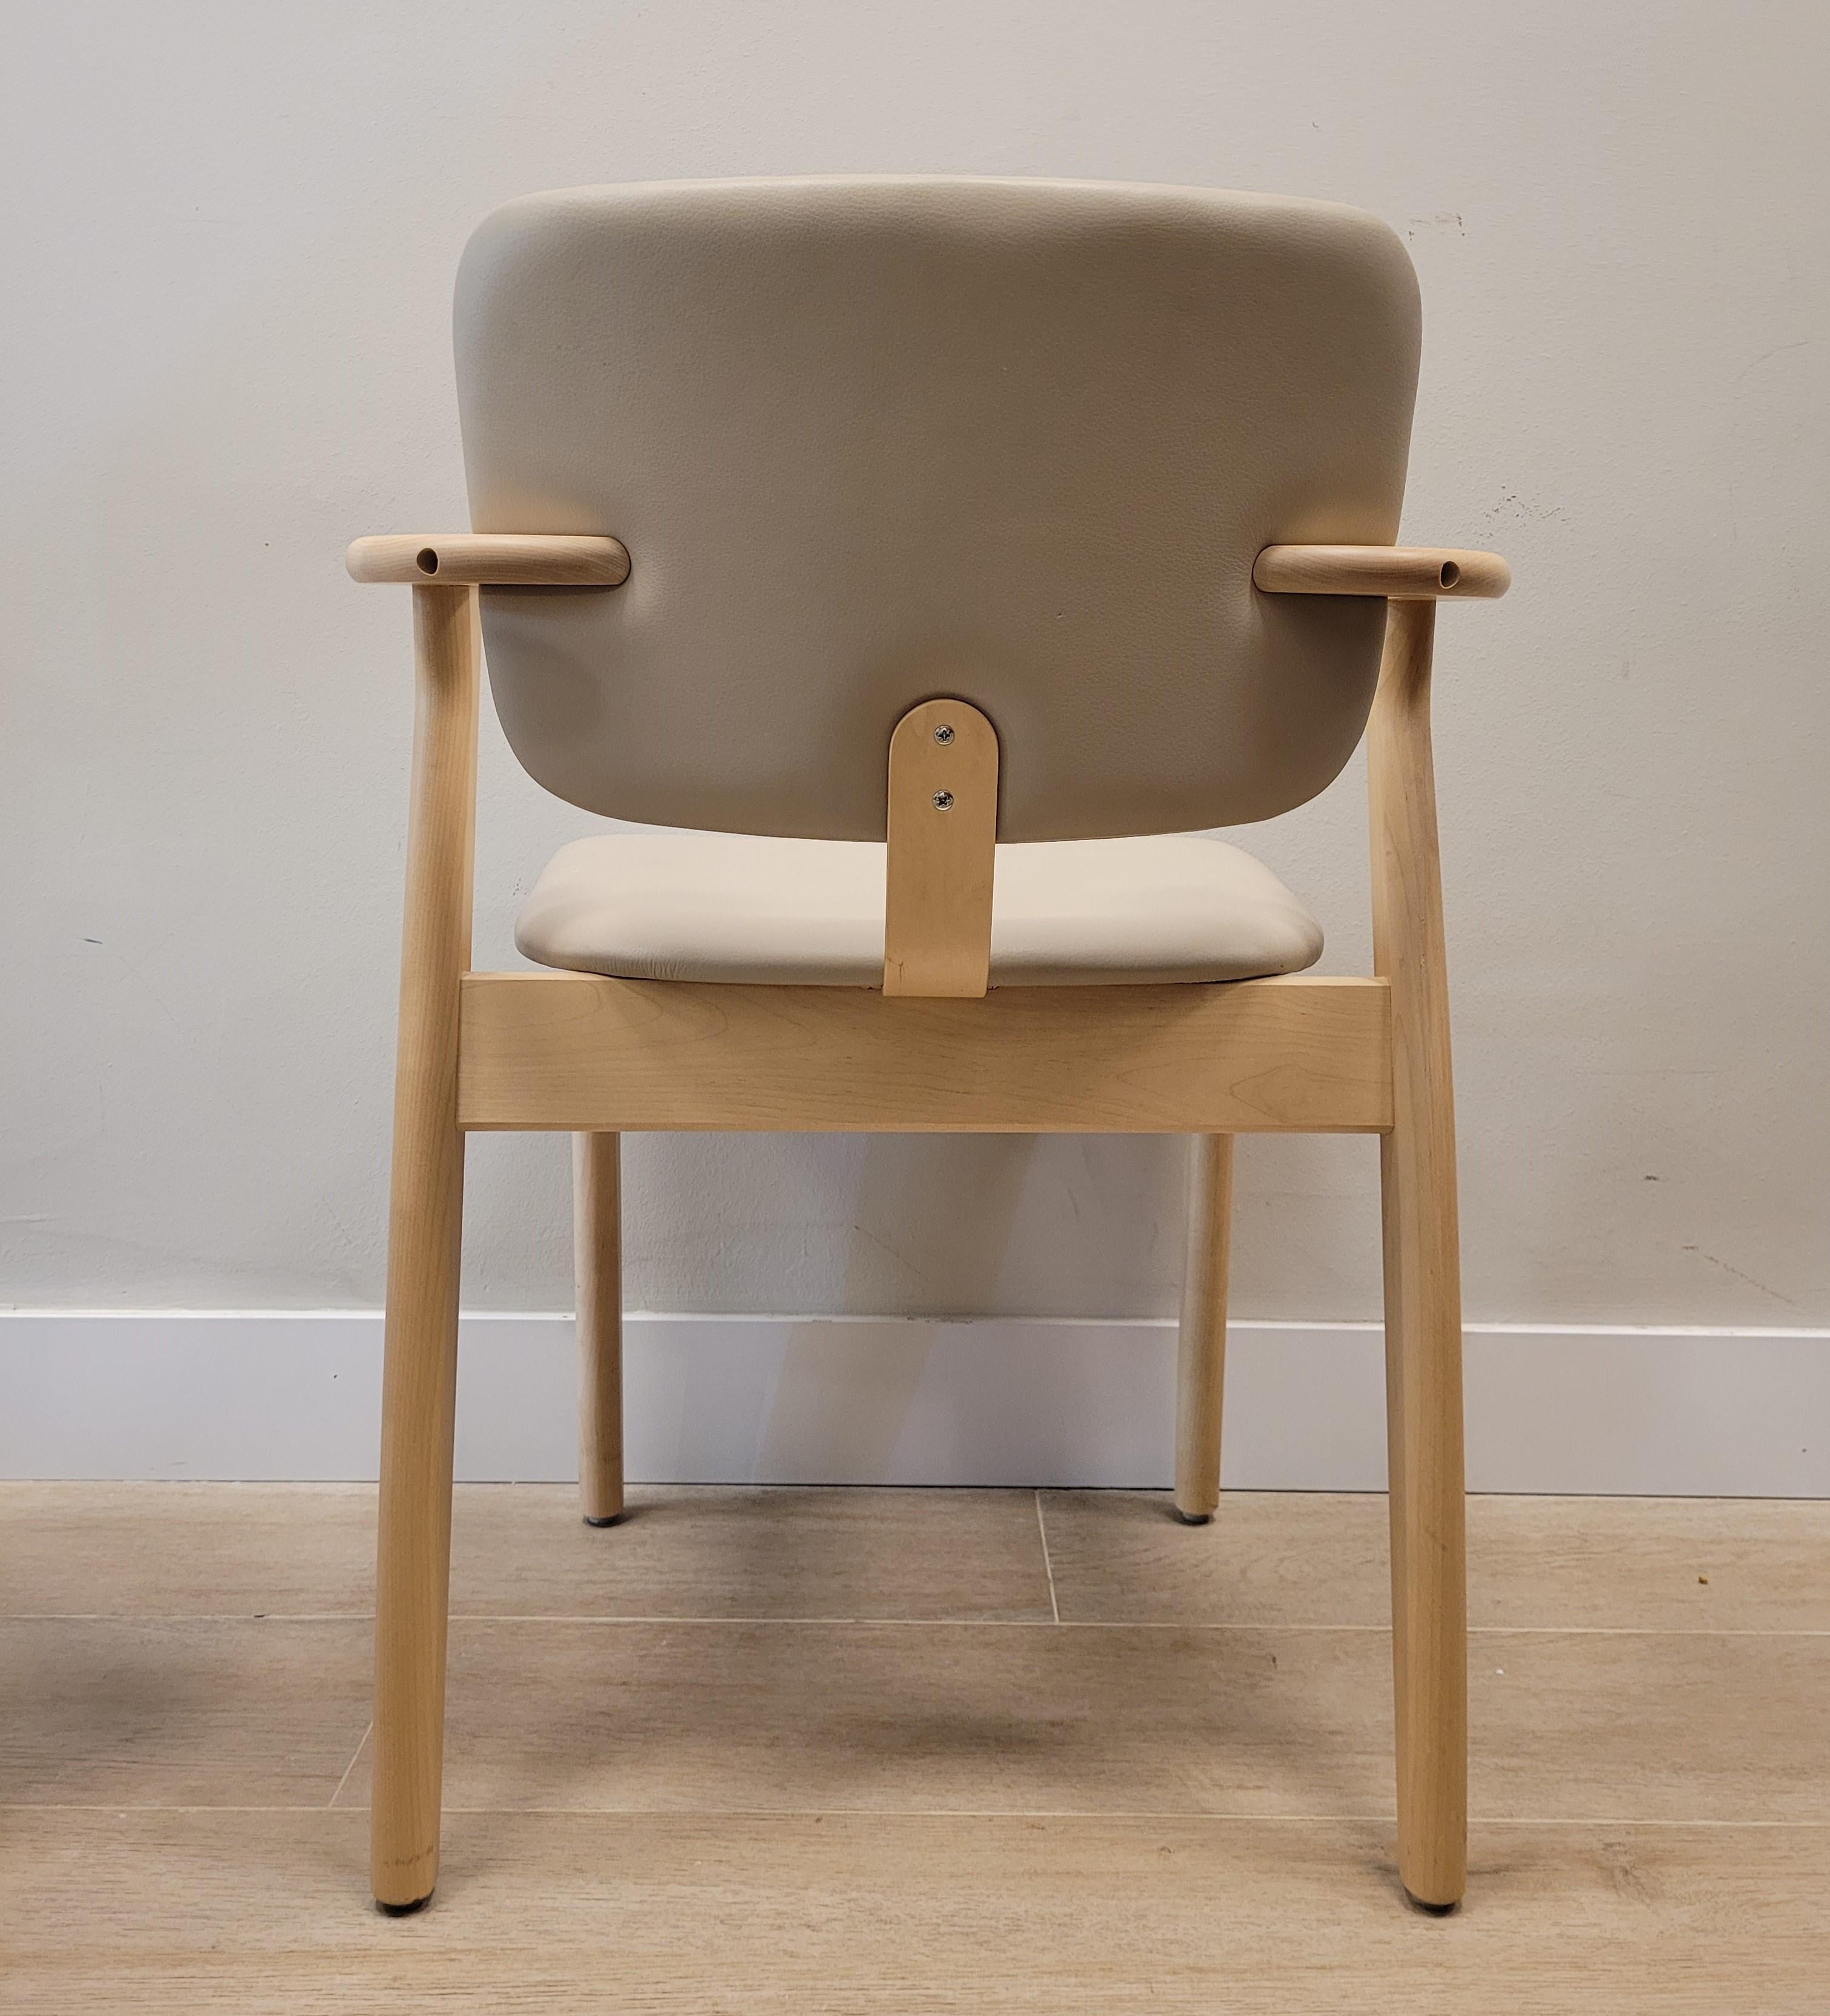  Finnish   Grey beige  chair  by Ilmari Domus beige leather Birch wood For Sale 2